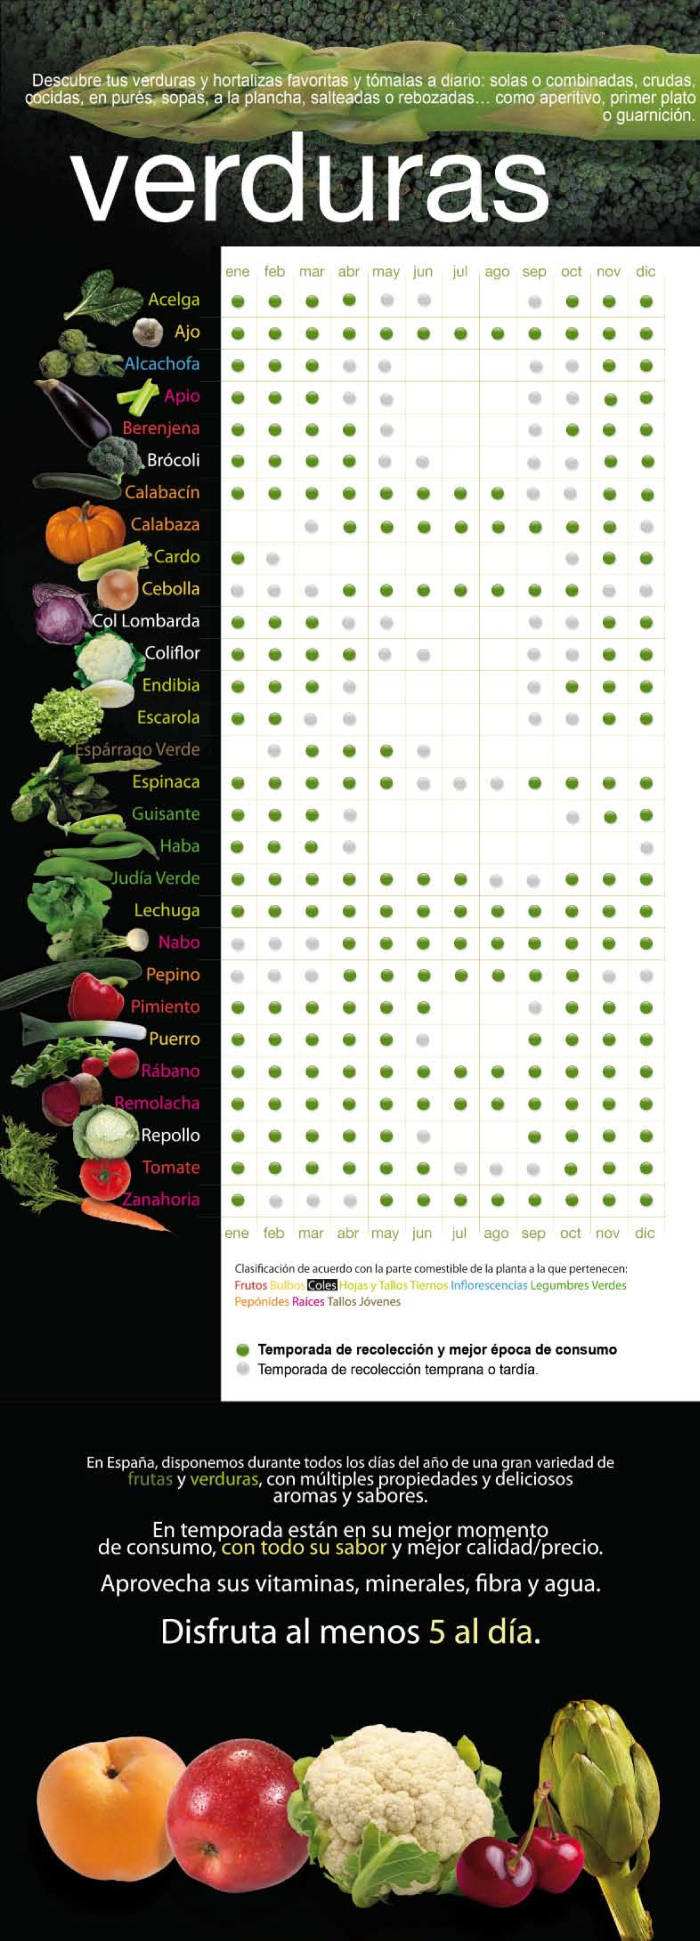 Calendario verduras de temporada